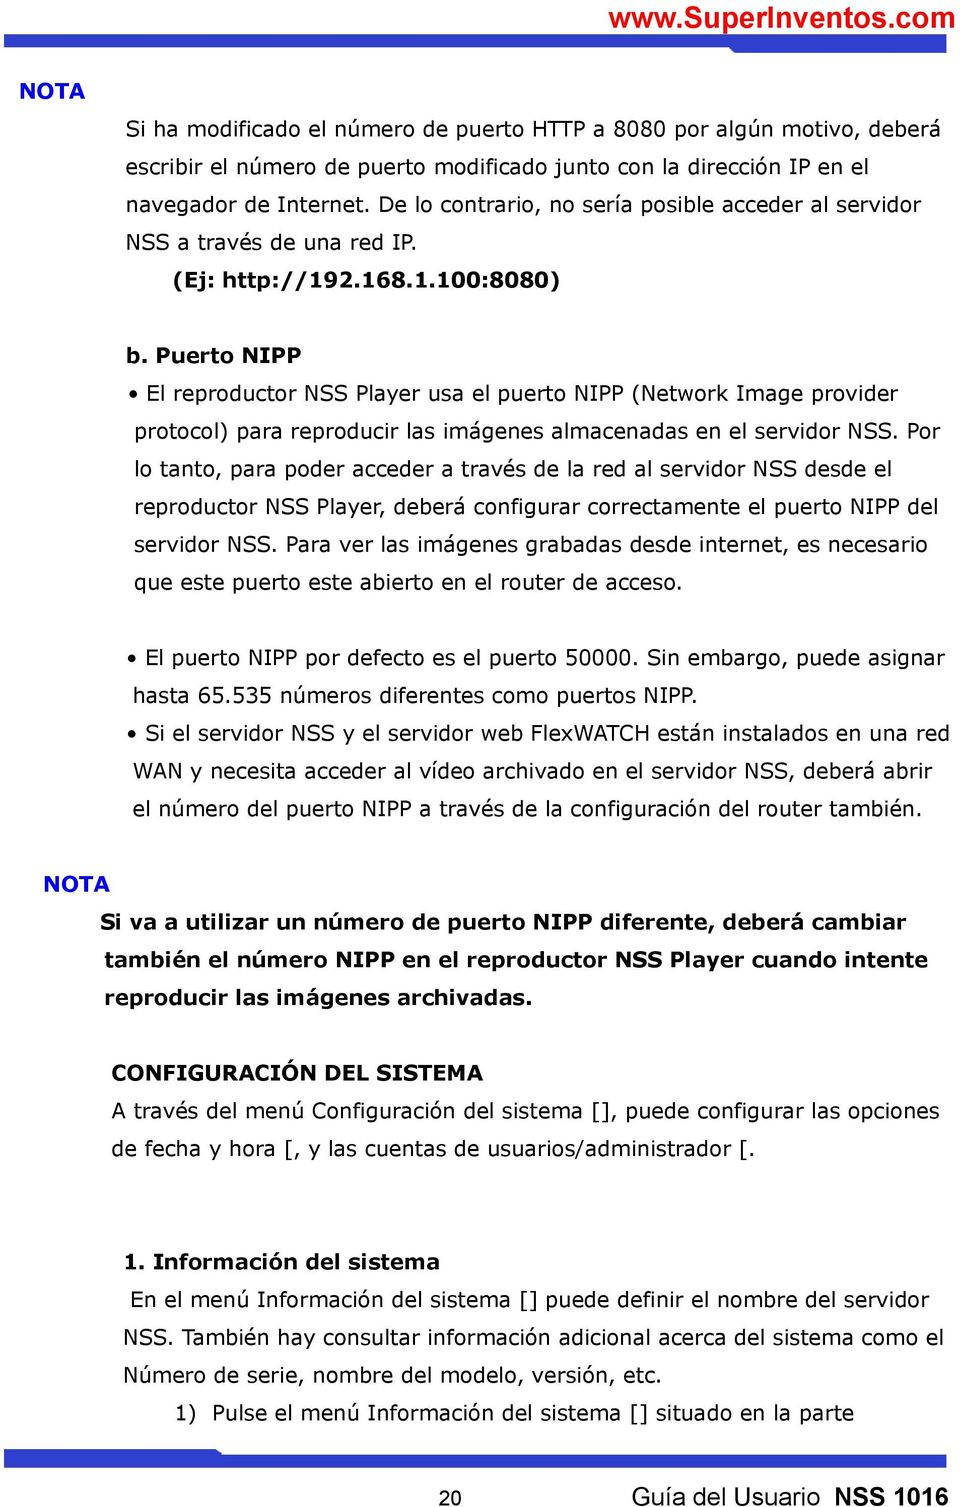 Puerto NIPP El reproductor NSS Player usa el puerto NIPP (Network Image provider protocol) para reproducir las imágenes almacenadas en el servidor NSS.